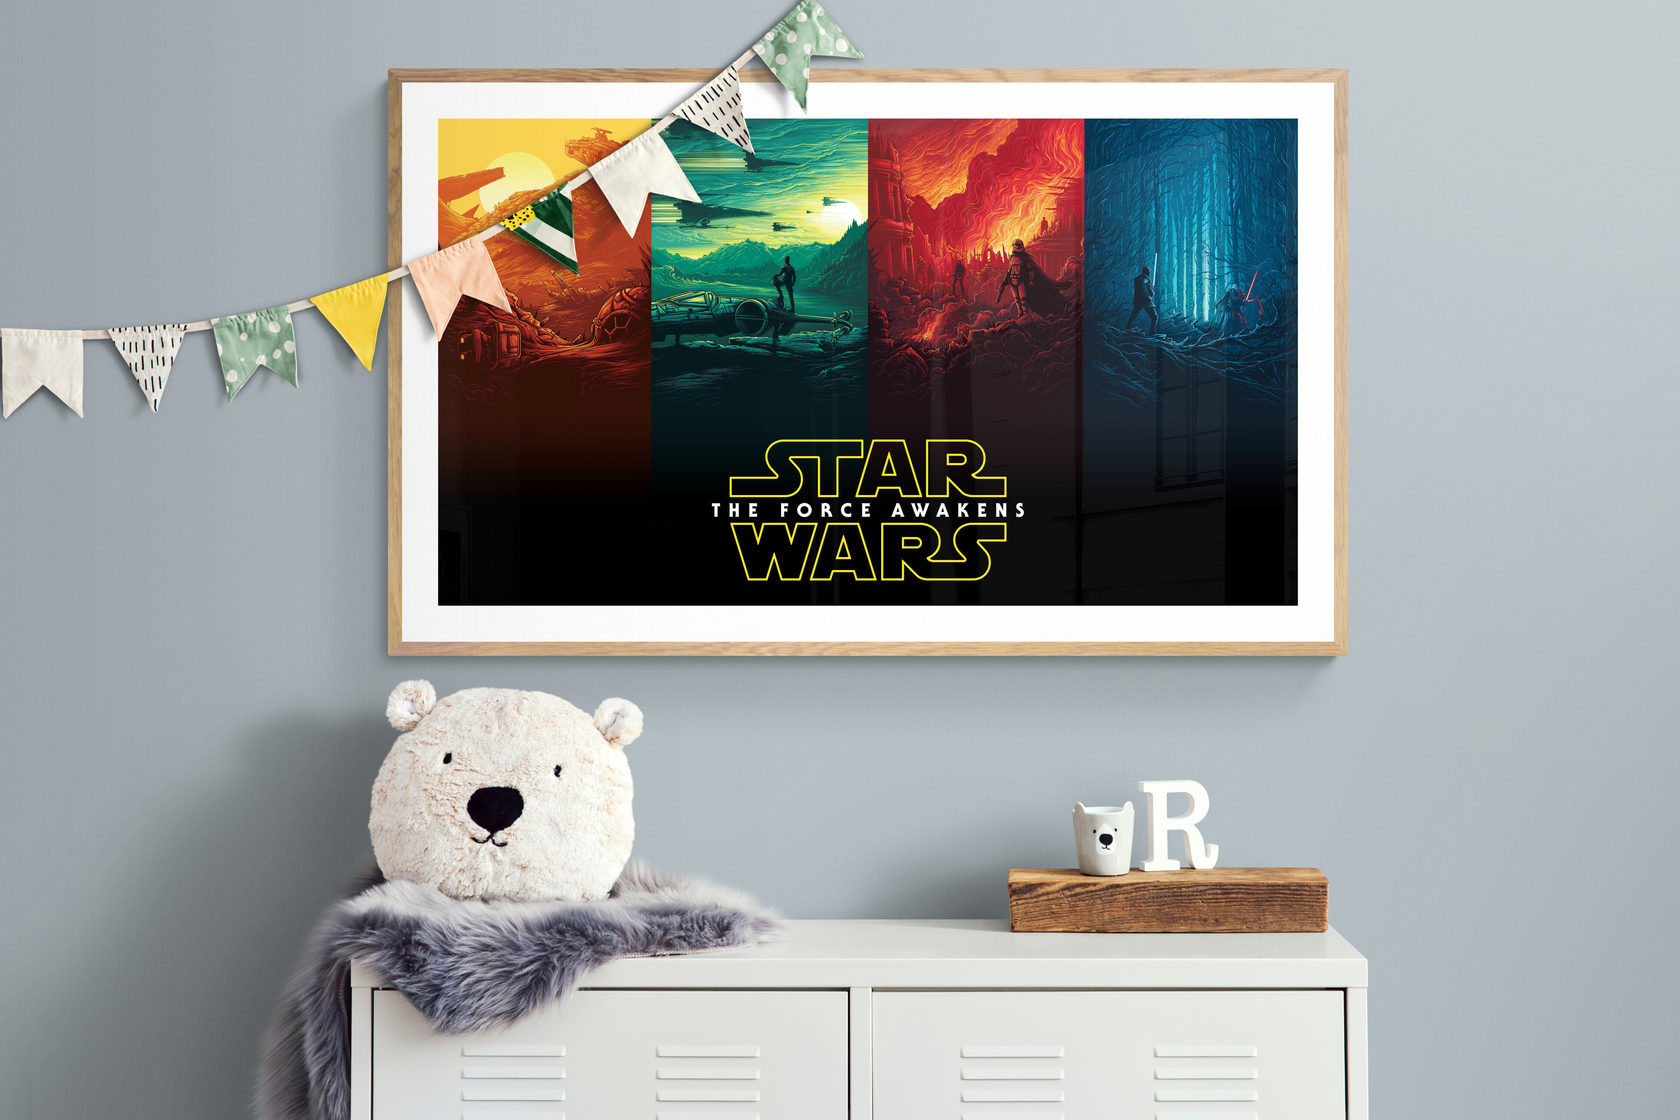 90011475 Плакат Просто Постер "Star Wars" - Пробуждение силы 40x50 в подарочном тубусе STLM-0084849 ПРОСТОПОСТЕР